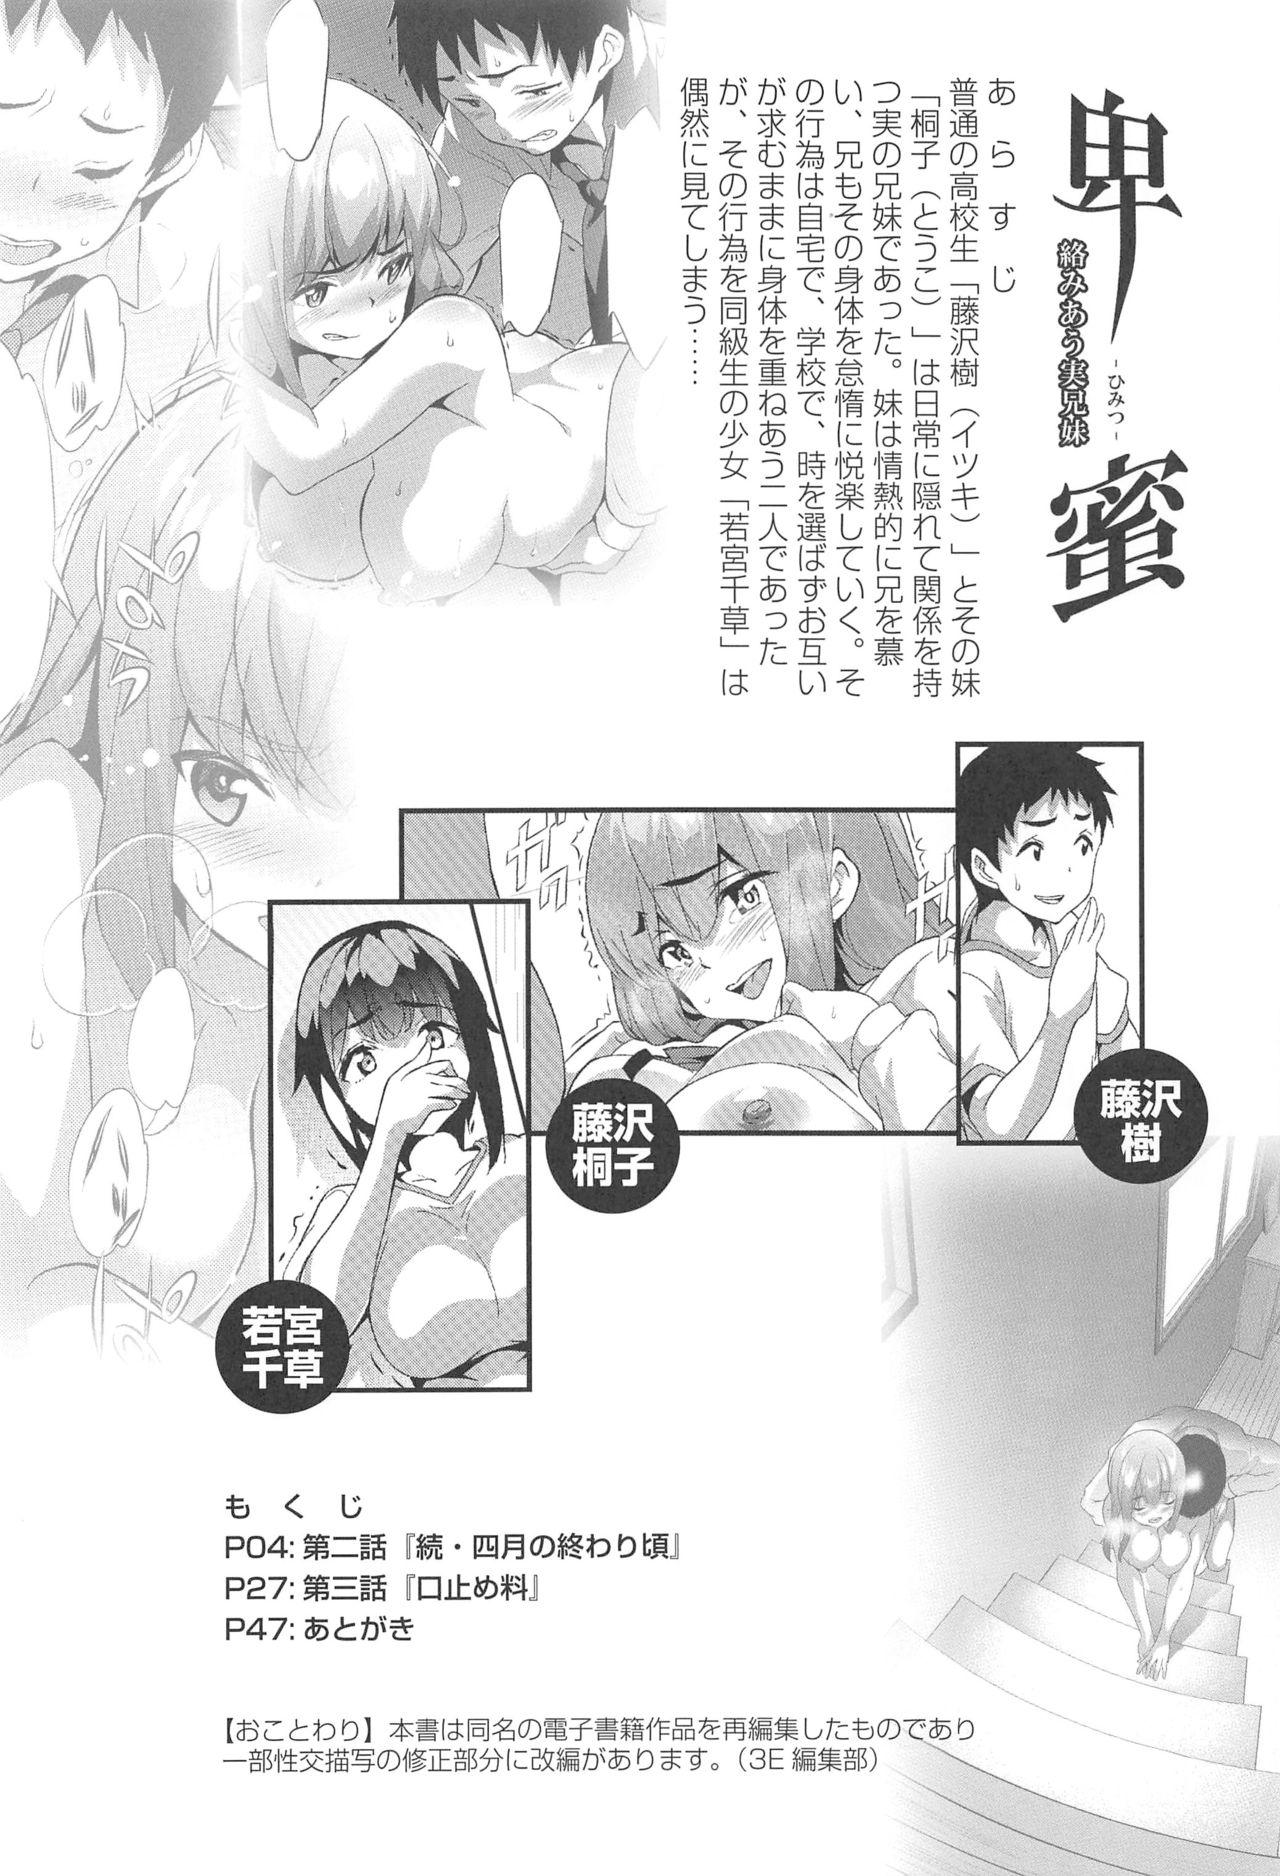 Hunks Himitsu 2 & 3 "Zoku 4-gatsu no Owarigoro" "Kuchidomeryou" - Original Ladyboy - Page 3